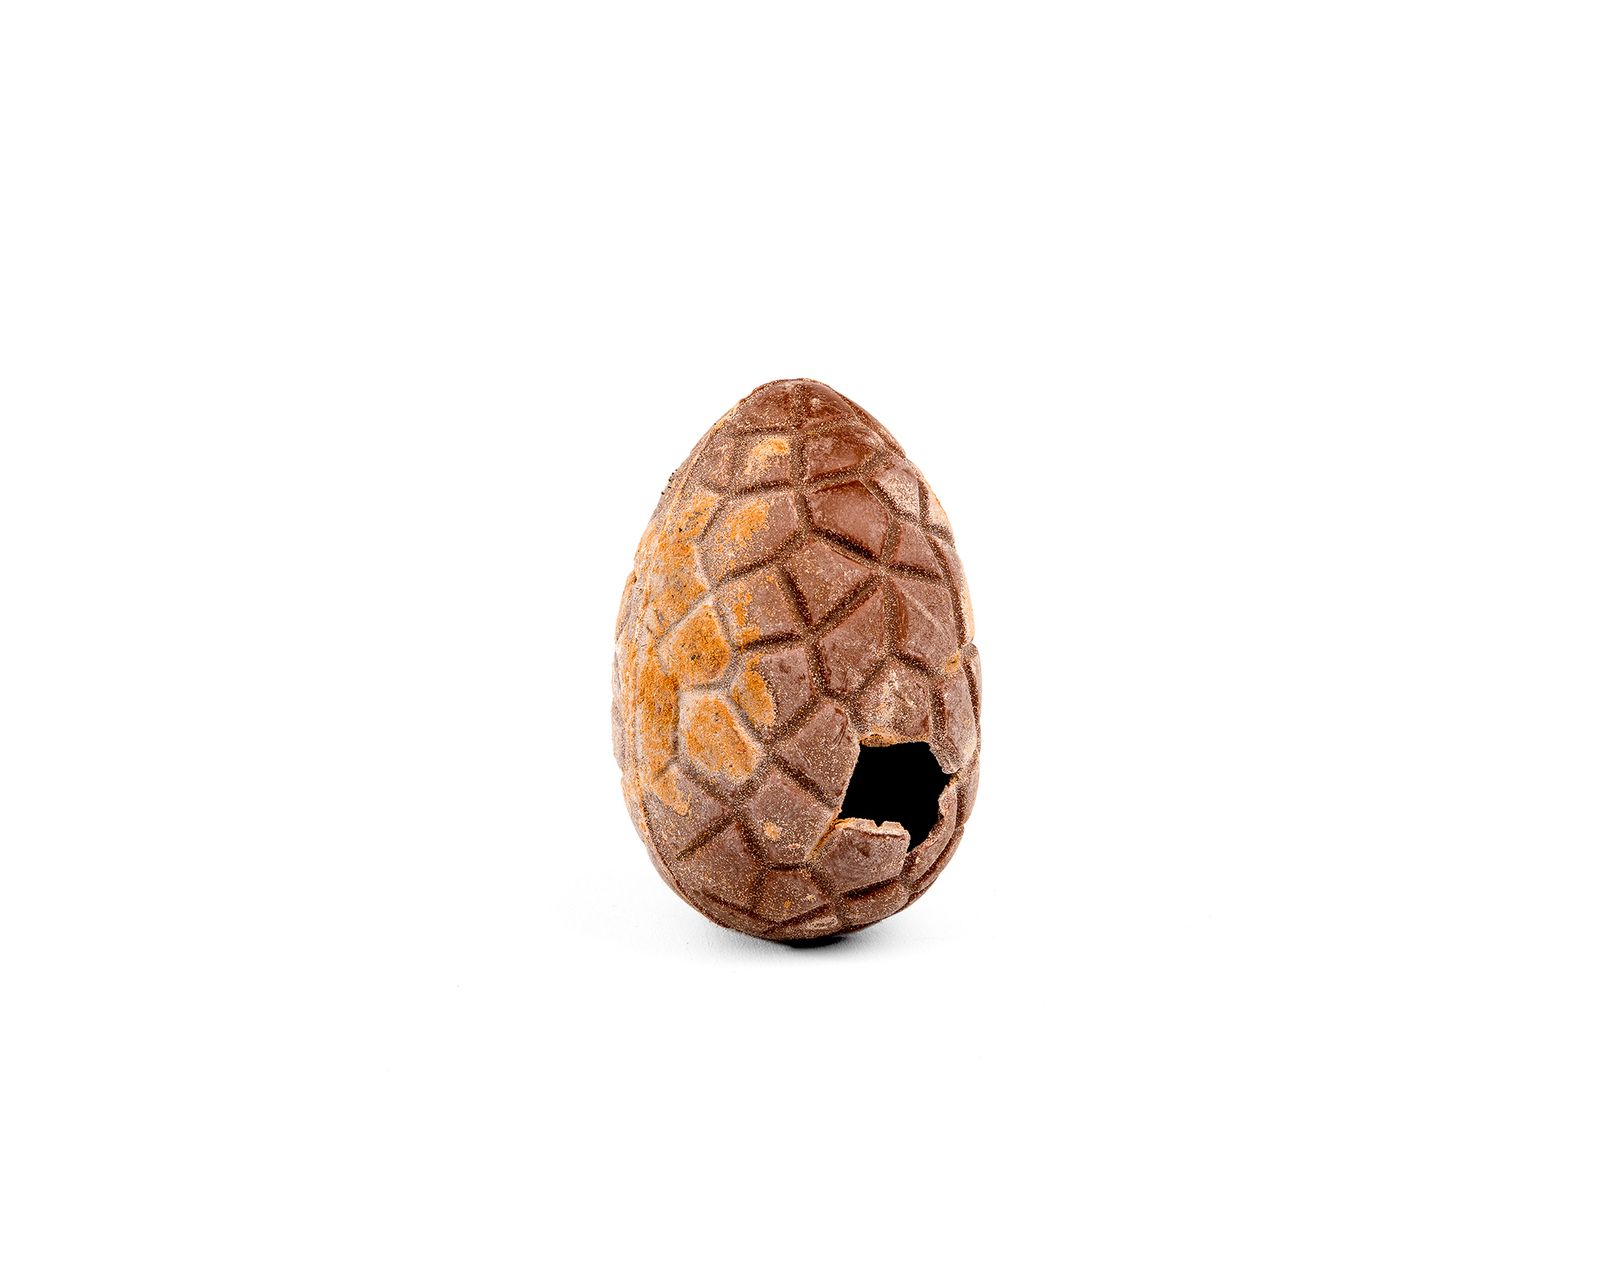 © Kris Vervaeke - Chocolate egg (Berchem)